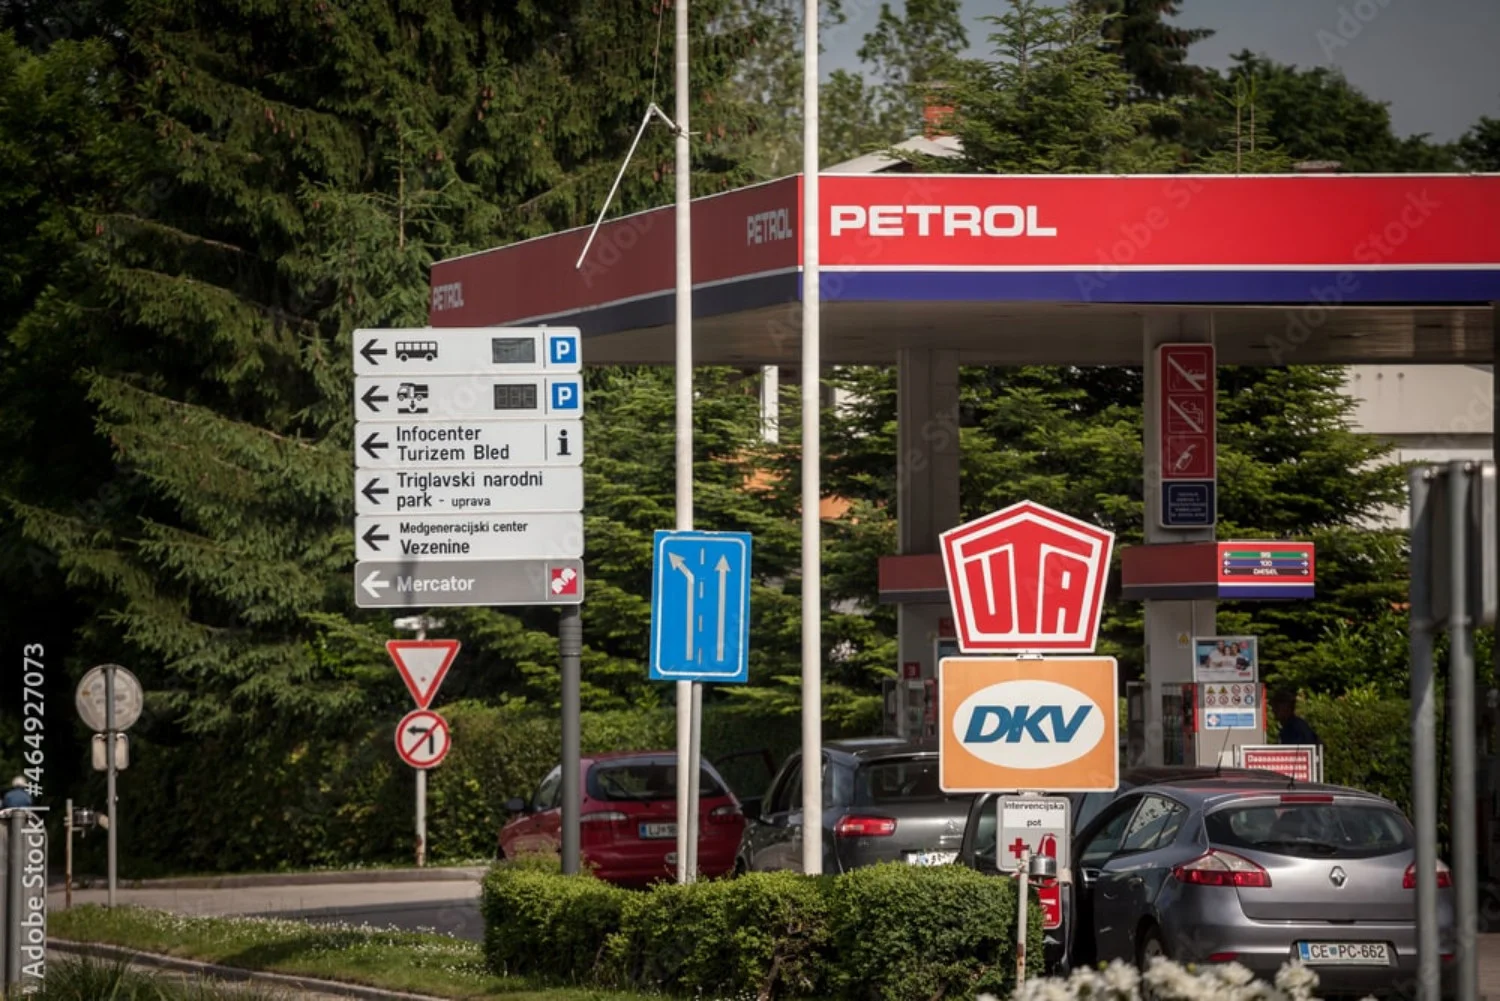 Vodeći brend u Sloveniji, Petrol važi za pouzdan brend.